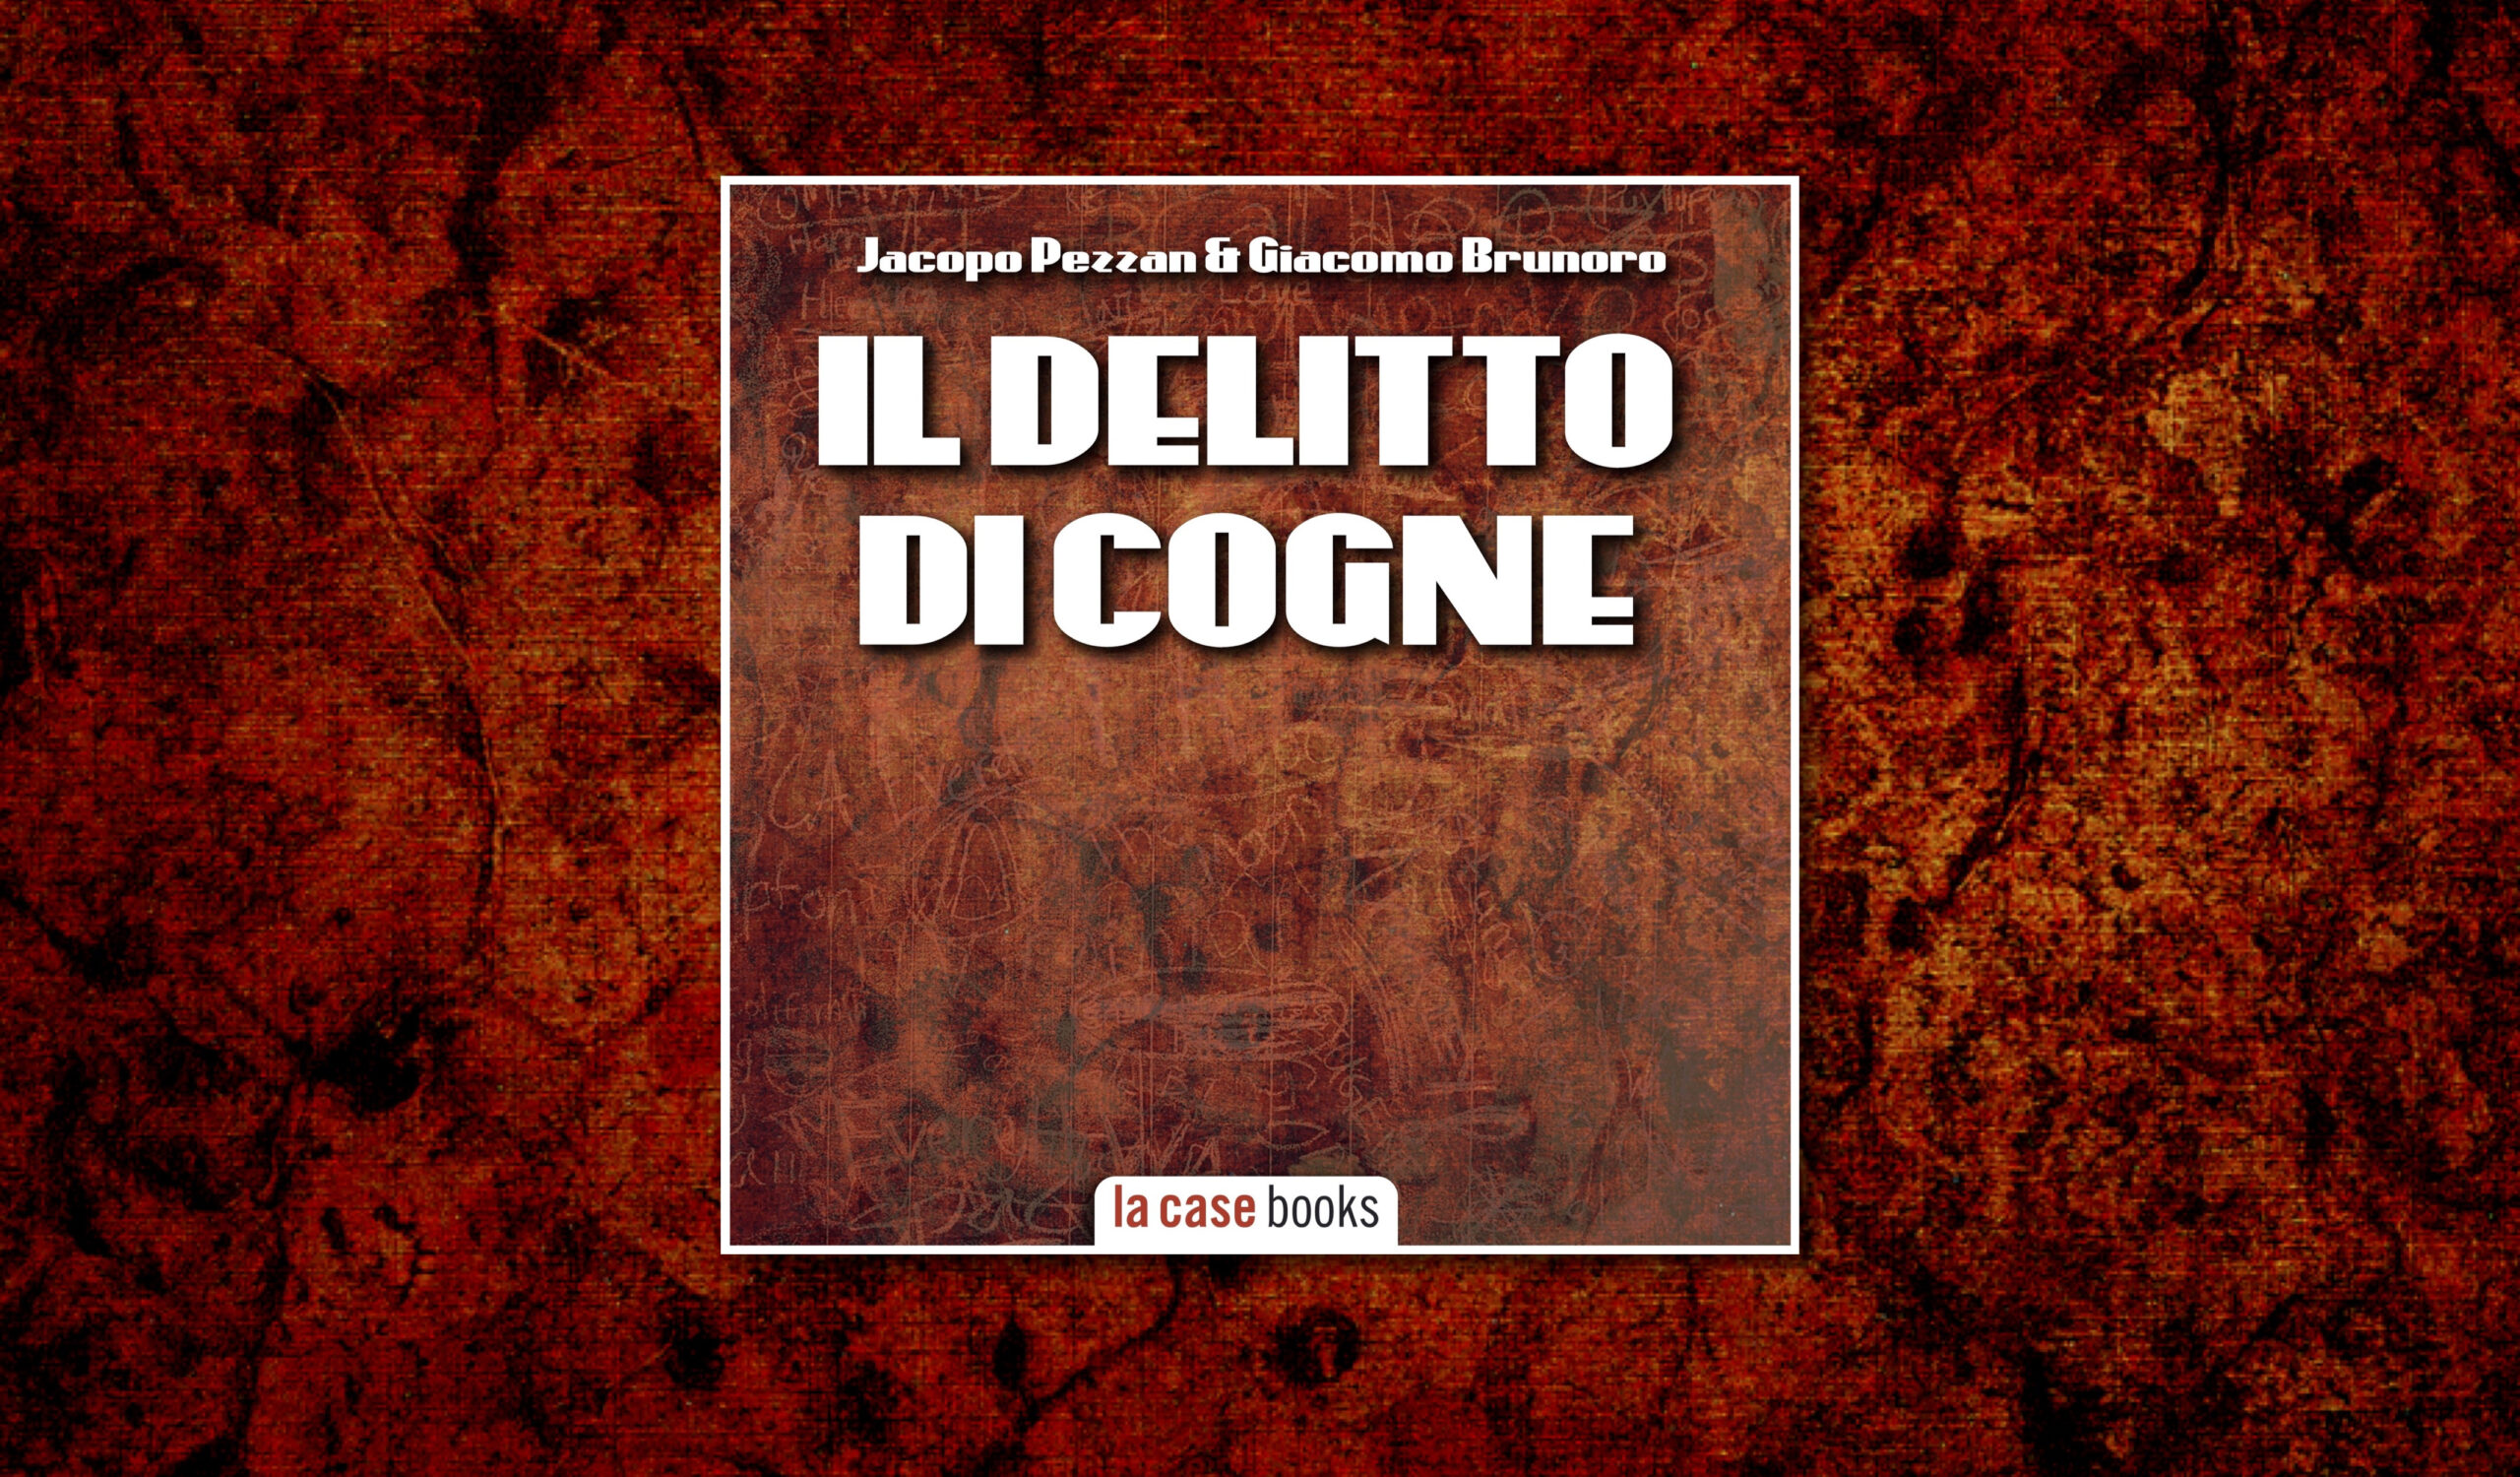 Il delitto di Cogne, il nuovo audiolibro di Pezzan & Brunoro è dedicato al caso che ha rappresentato uno spartiacque nel racconto e nella percezione della cronaca nera in Italia.